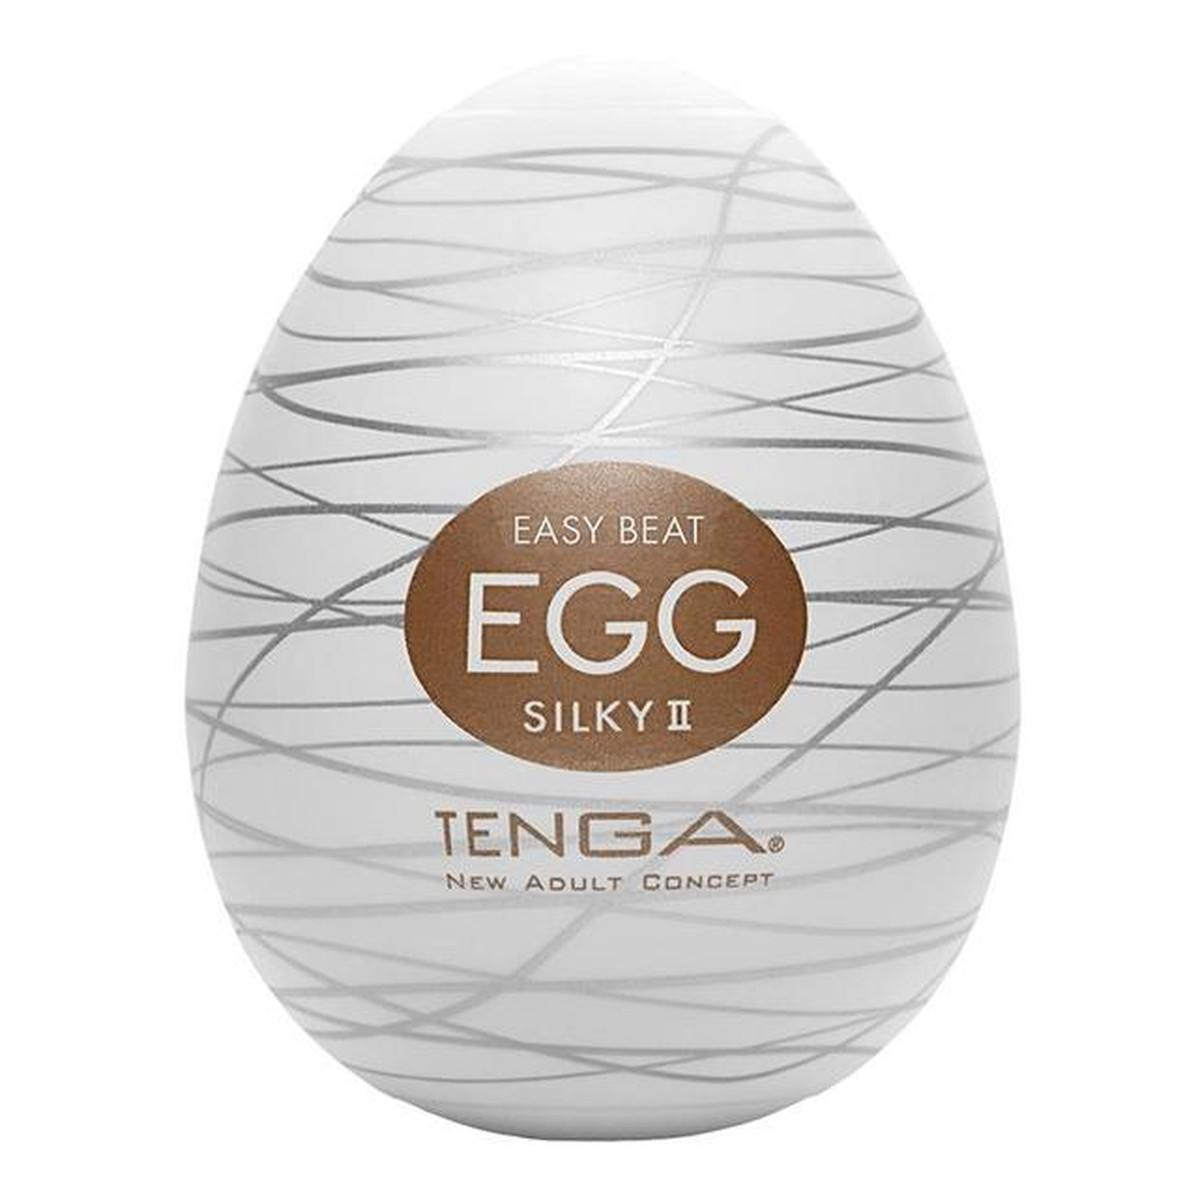 Tenga Easy beat egg silky ii jednorazowy masturbator w kształcie jajka